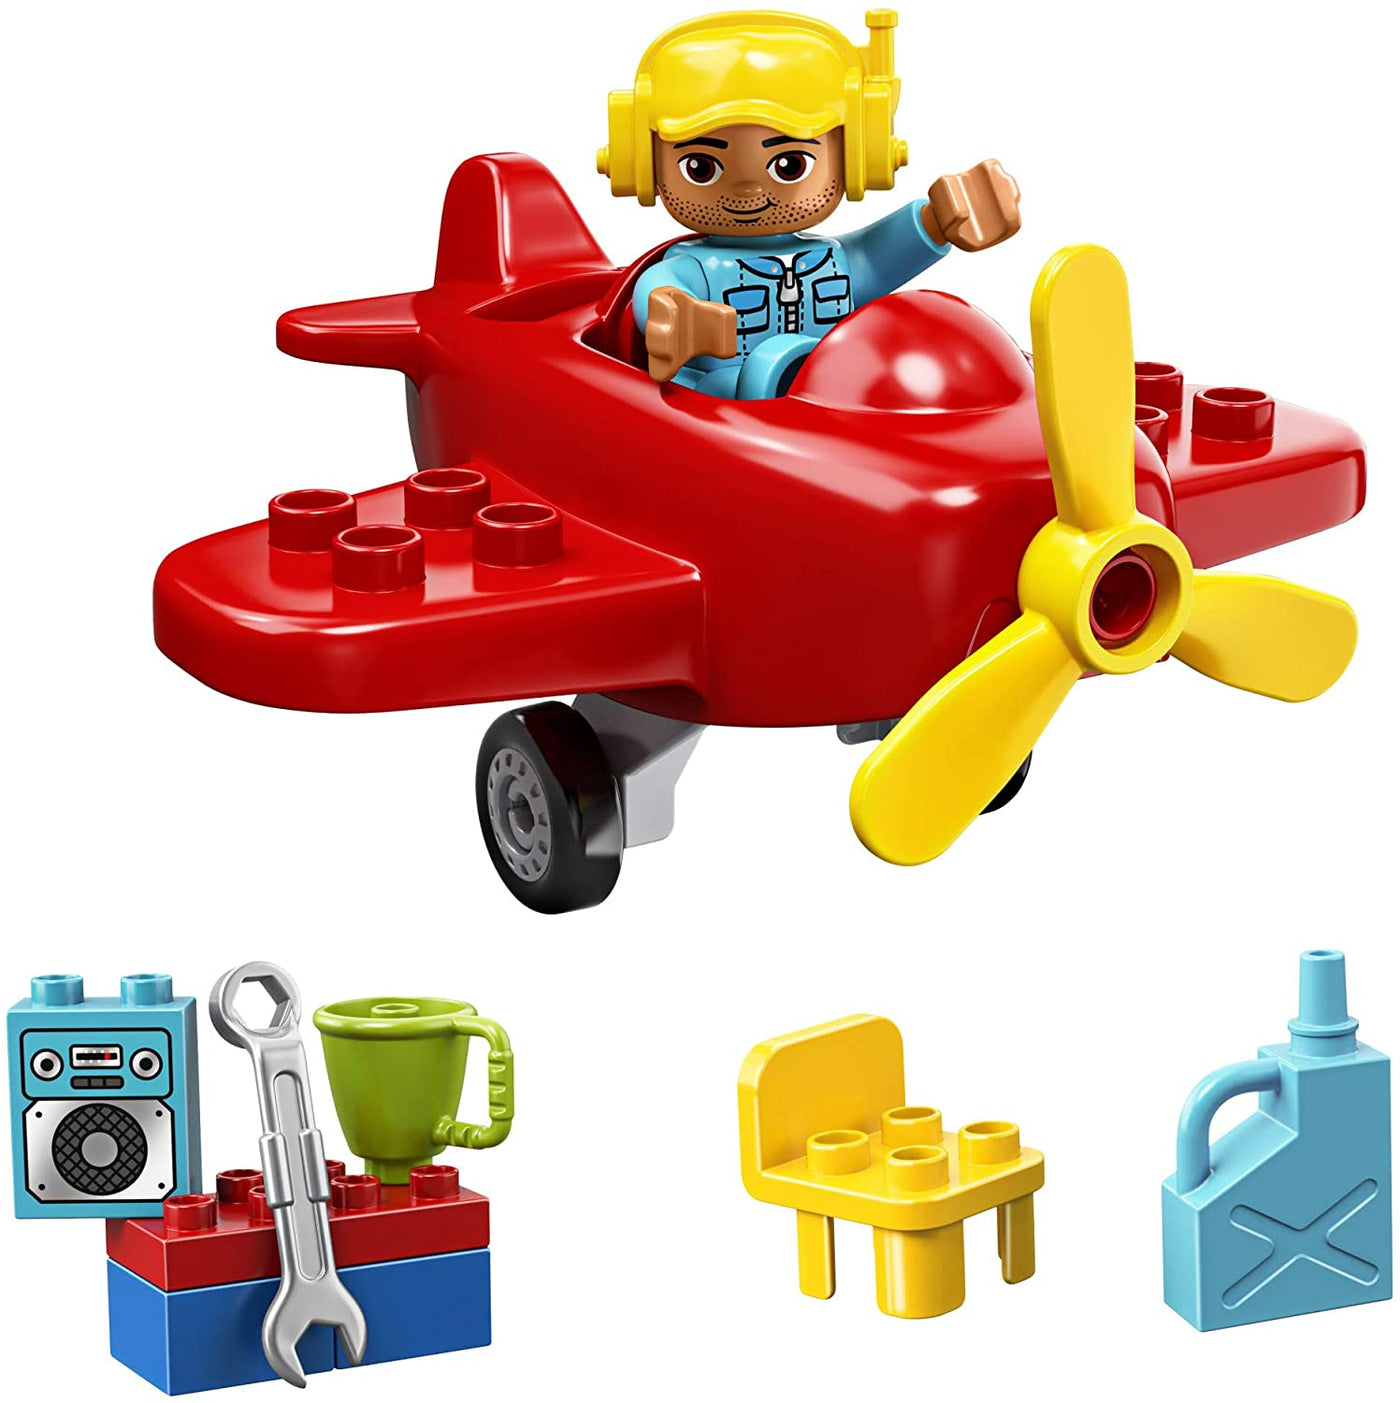 LEGO DUPLO Town Plane, 10908